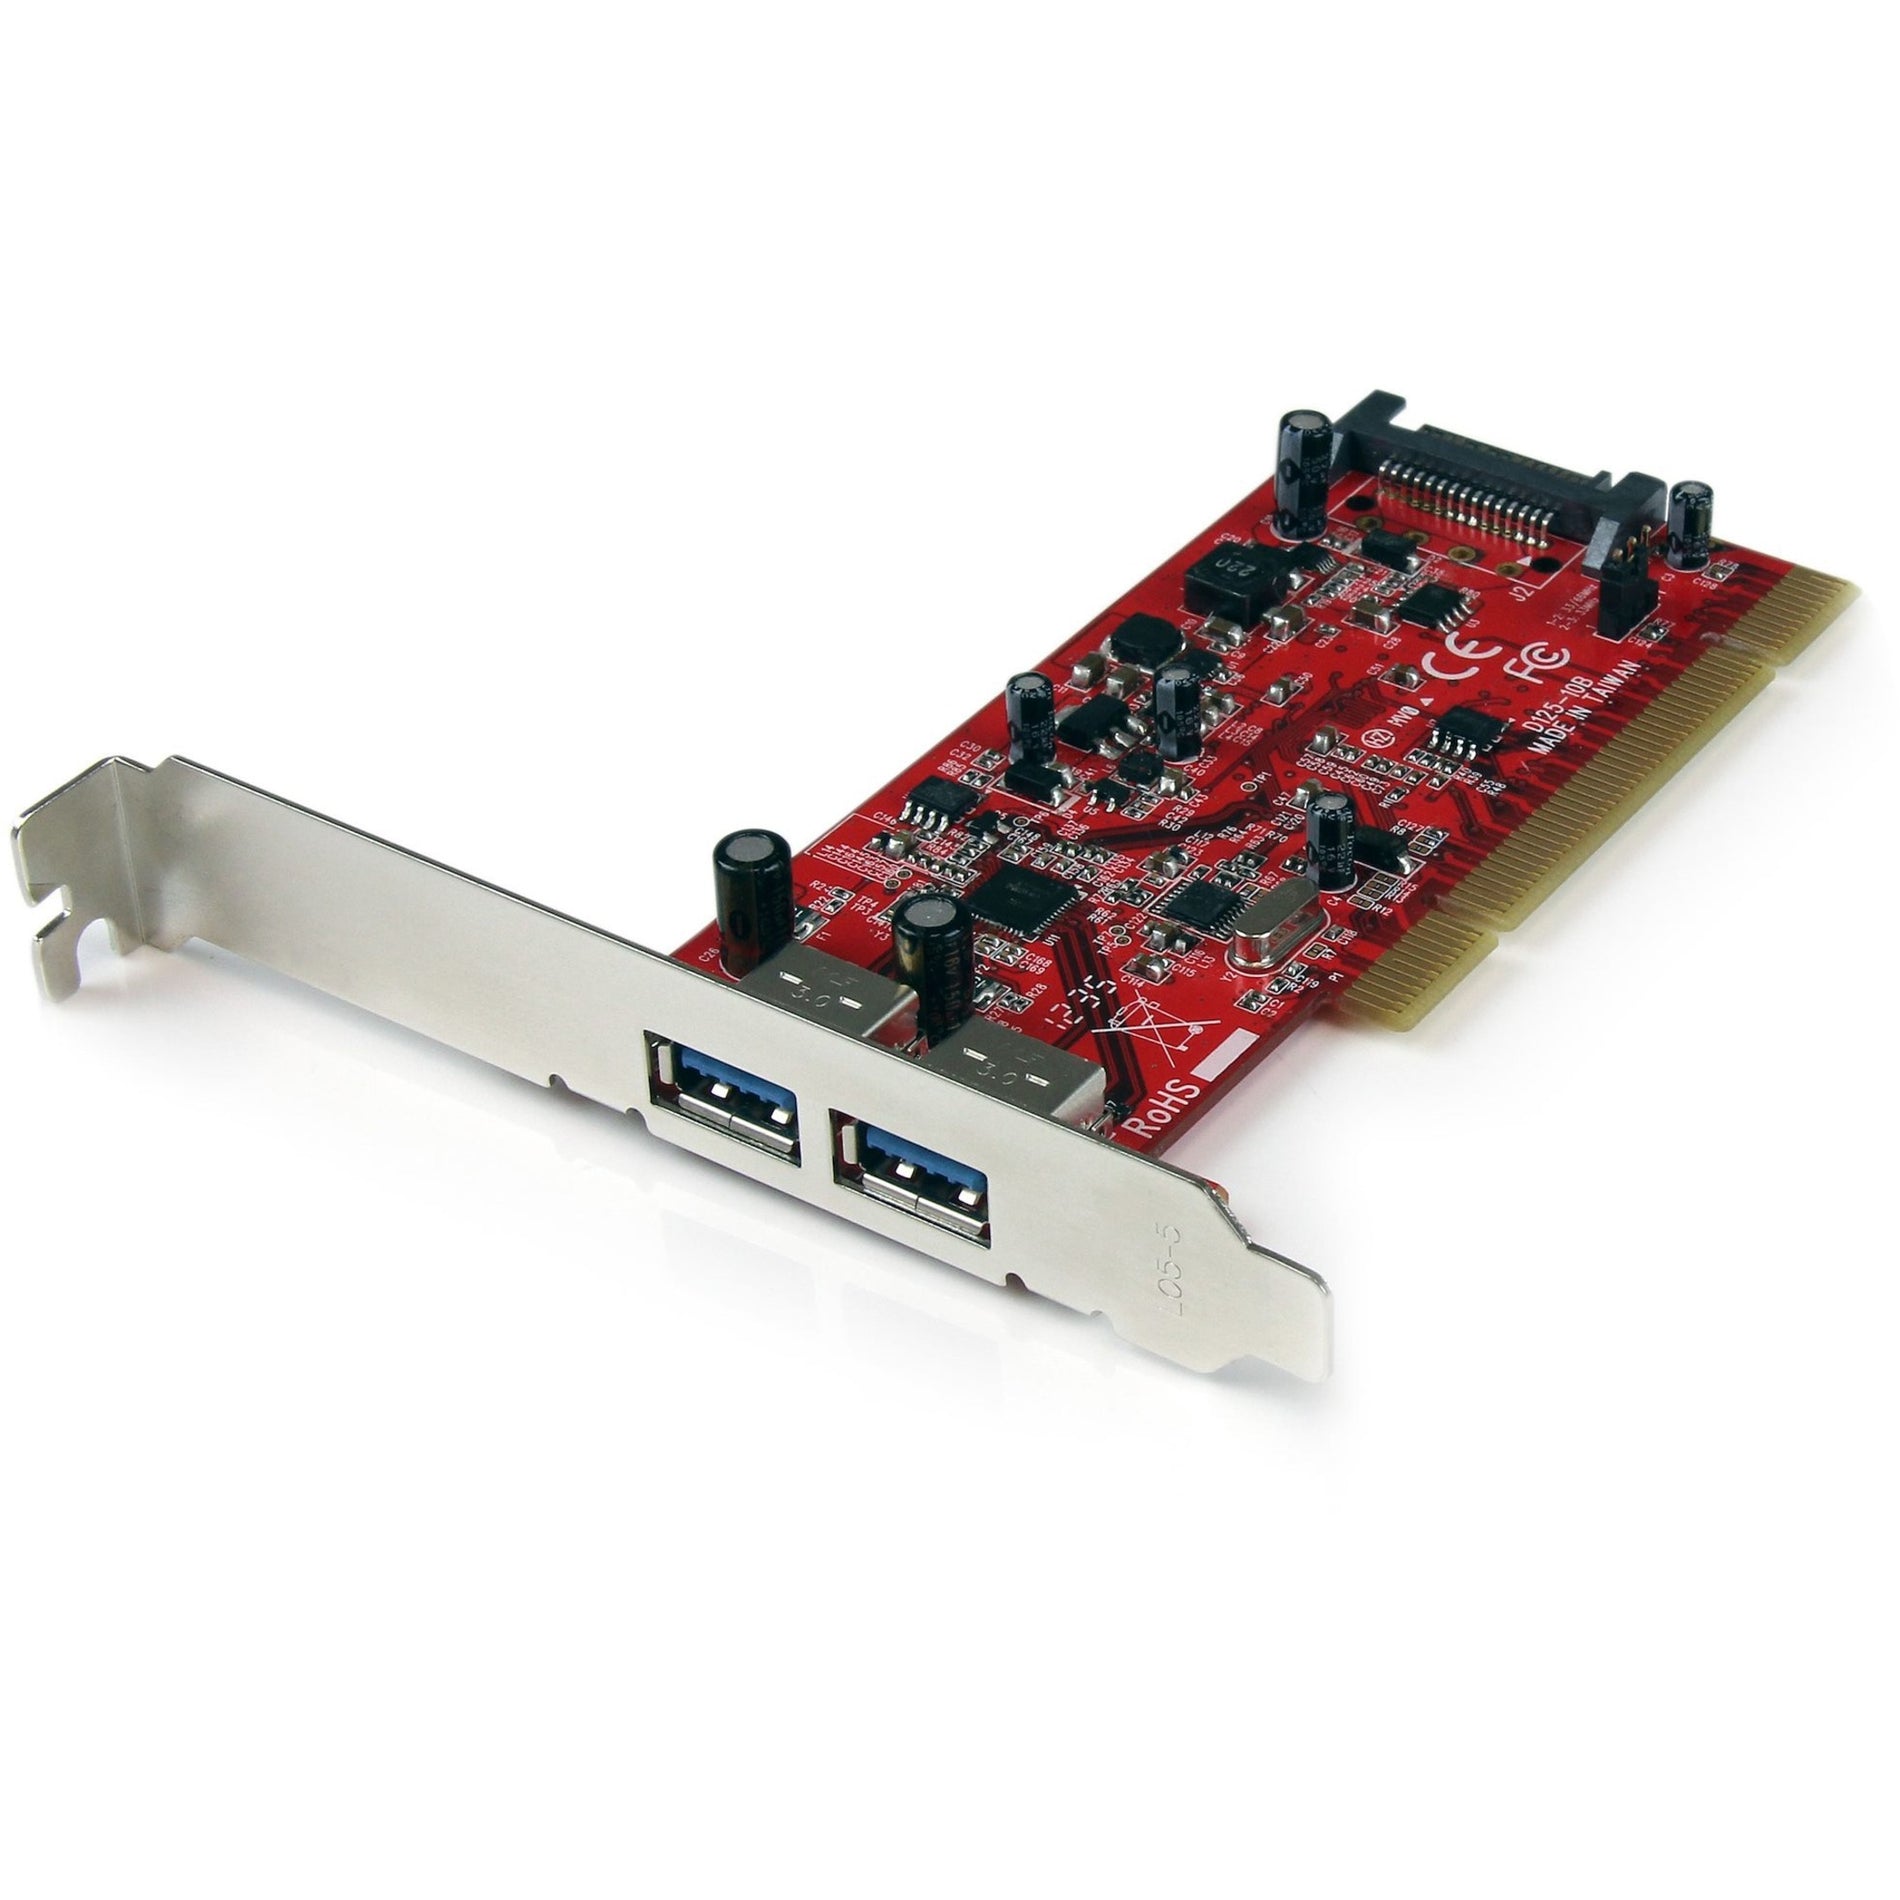 StarTech.com بطاقة تحويل USB 3.0 SuperSpeed PCI بمنفذين وطاقة SATA، نقل بيانات عالي السرعة وتثبيت سهل